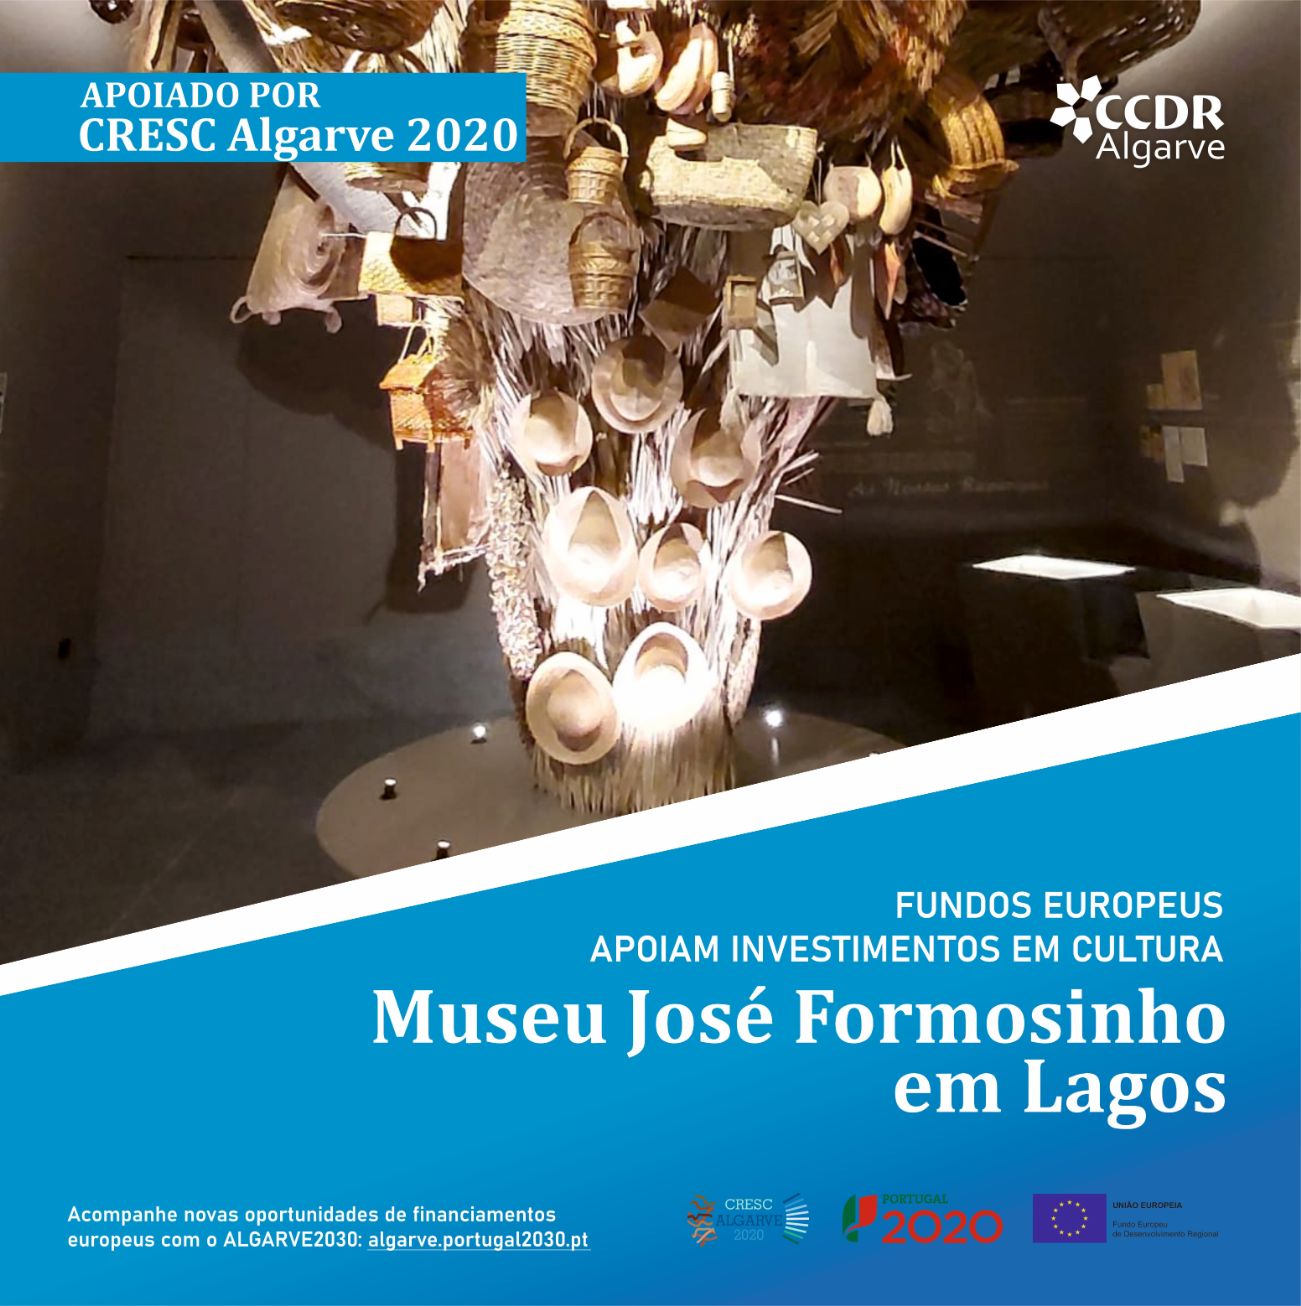 Fundos europeus geridos pelo cresc algarve 2020 apoiaram a qualificaçâo do património cultural na região - Em destaque: Museu José Formosinho em Lagos